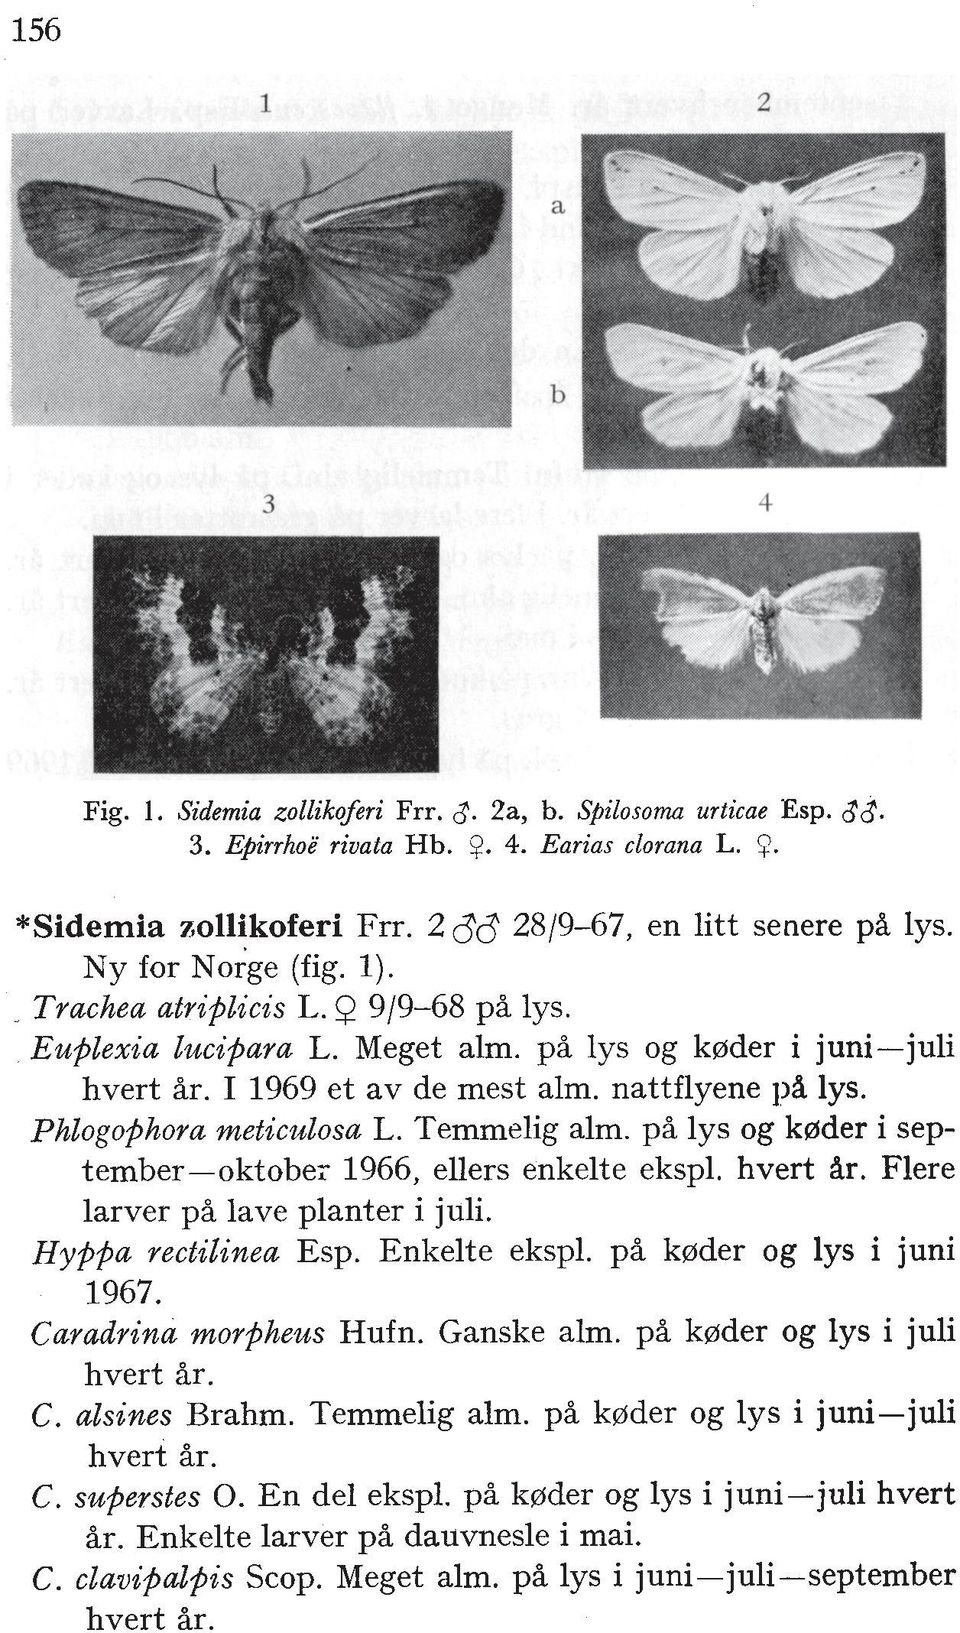 Phlogophora meticulosa L. Temrnelig alm. pi lys og kprder i september-oktobe; 1966, ellers enkelte ekspl. hvert Ar. Flere larver p% lave planter i juli. Hyppa rectilinea Esp. Enkelte ekspl.